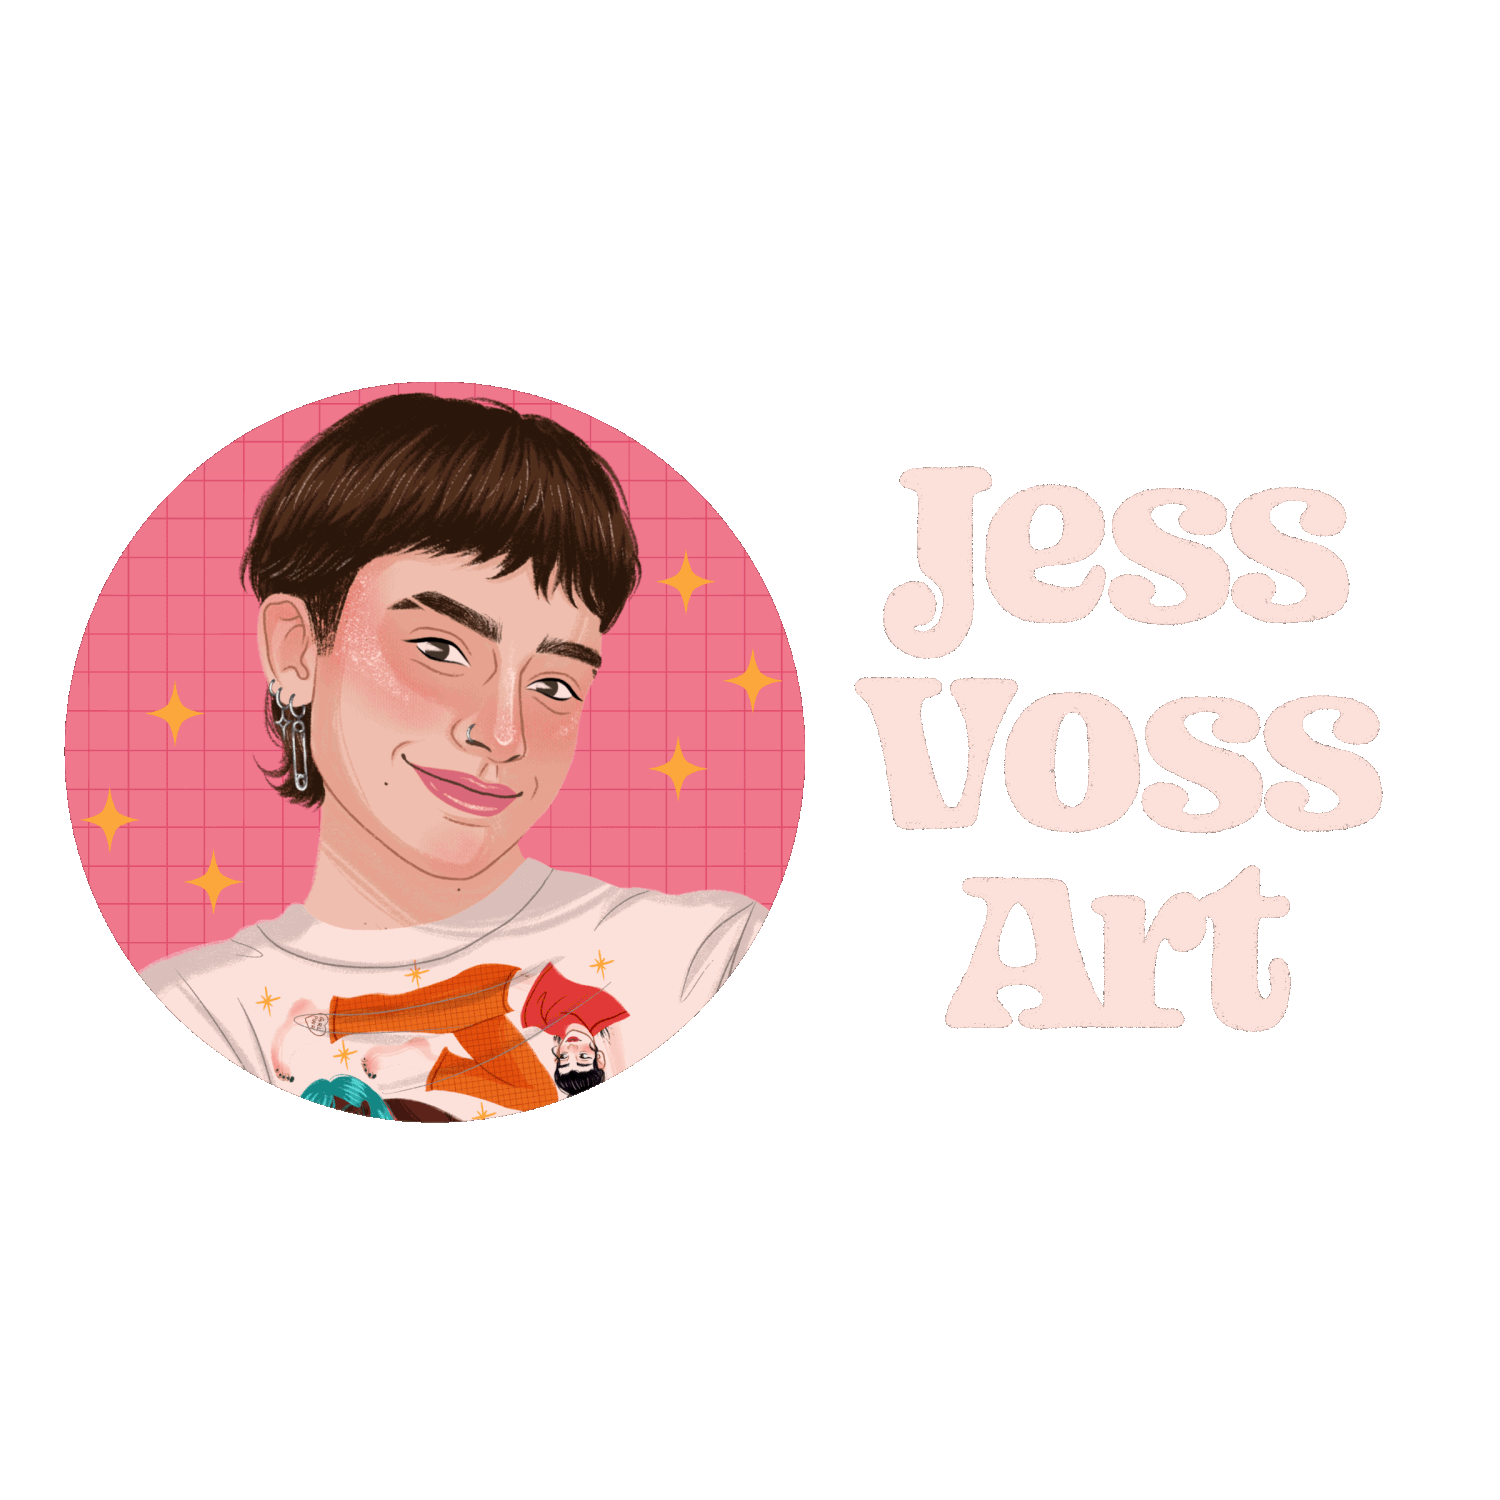 Jess Voss Art